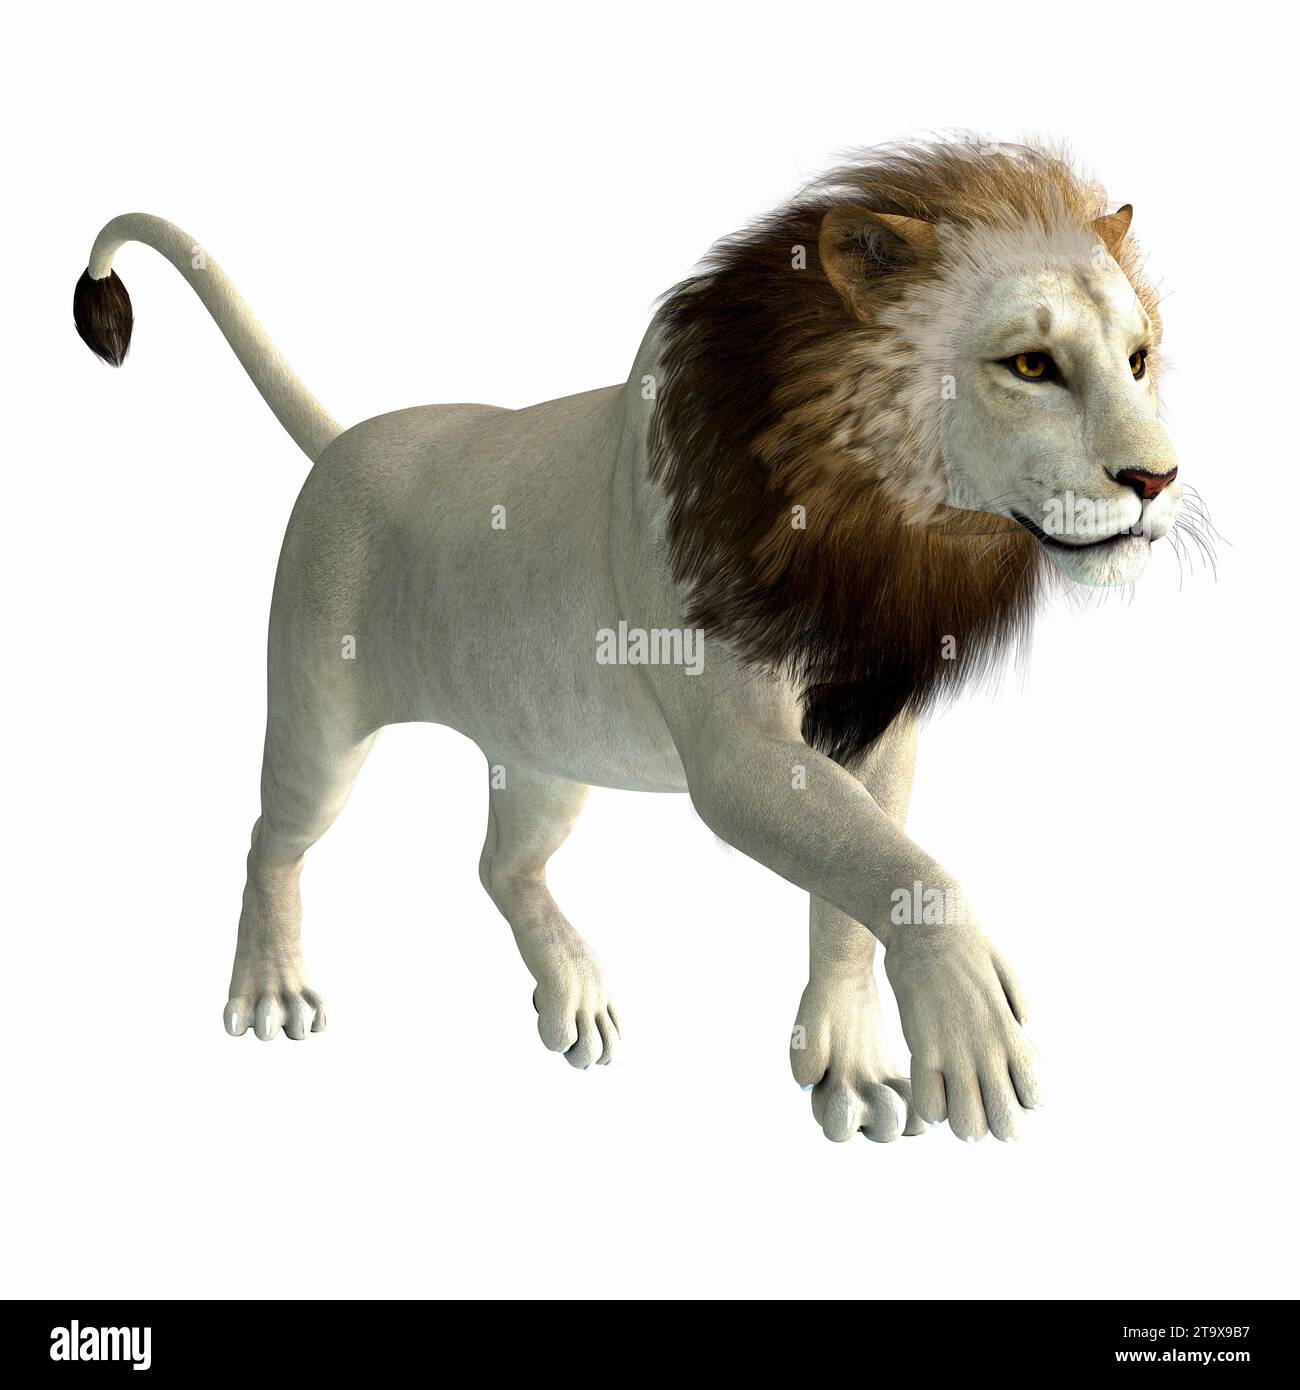 Le lion américain a vécu comme un prédateur de mégafaune pendant la Période pléistocène de l'Amérique du Nord. Banque D'Images